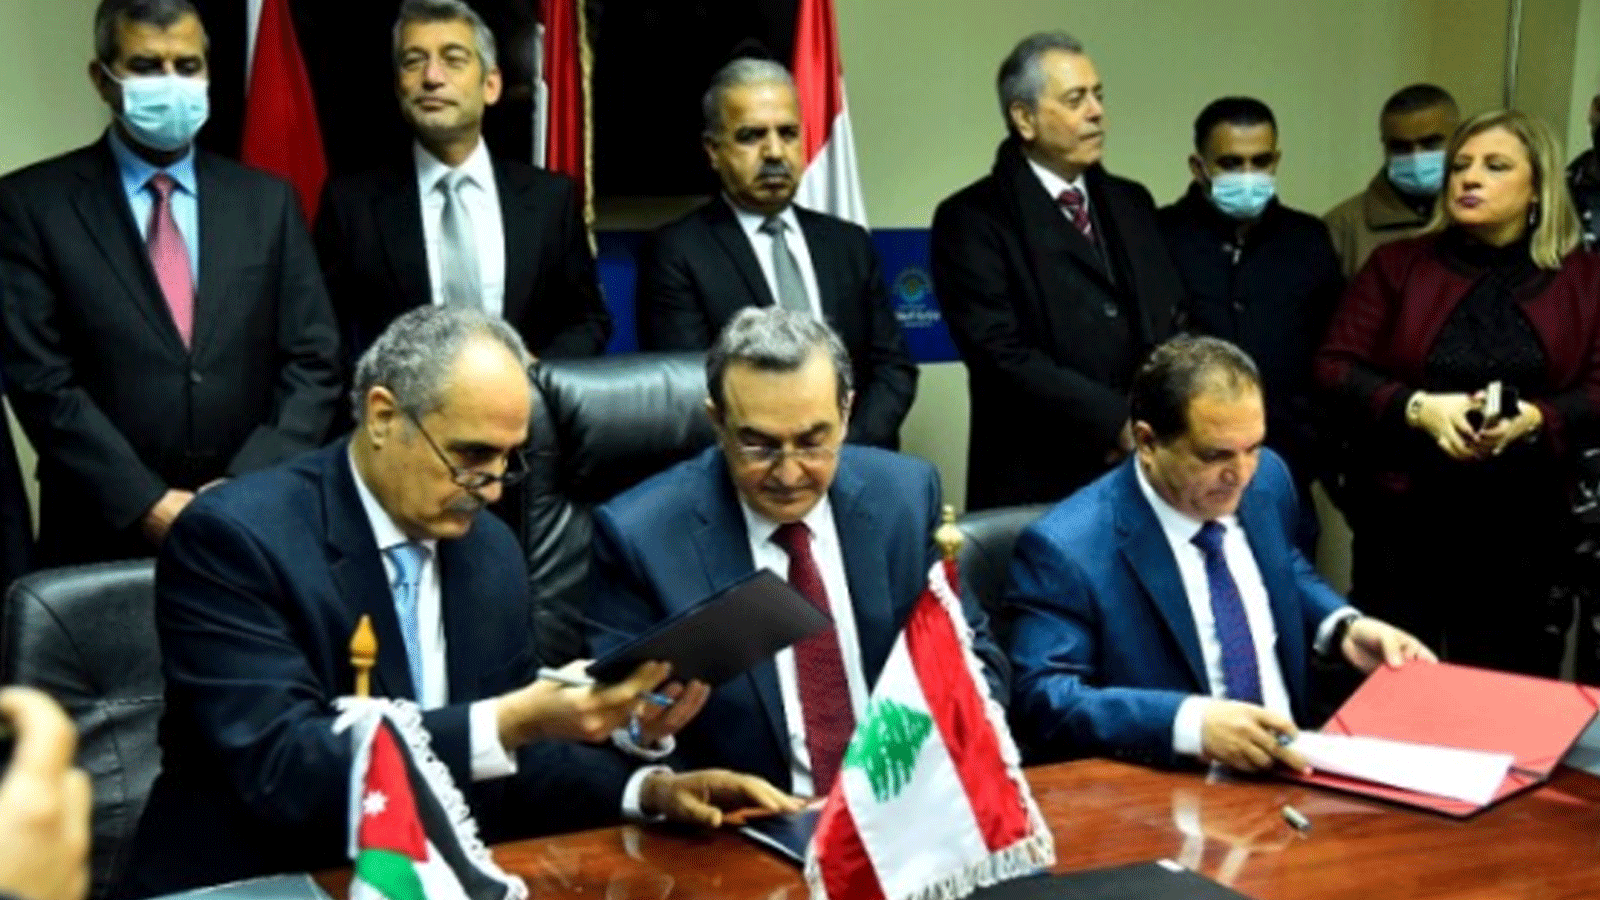 وزير الطاقة وليد فياض وقع مع نظيريه السوري غسان الزامل والأردني صالح الخرابشة، اتفاقية الشراء بين لبنان وسوريا، واتفاقية العبور بينهما وبين الأردن.